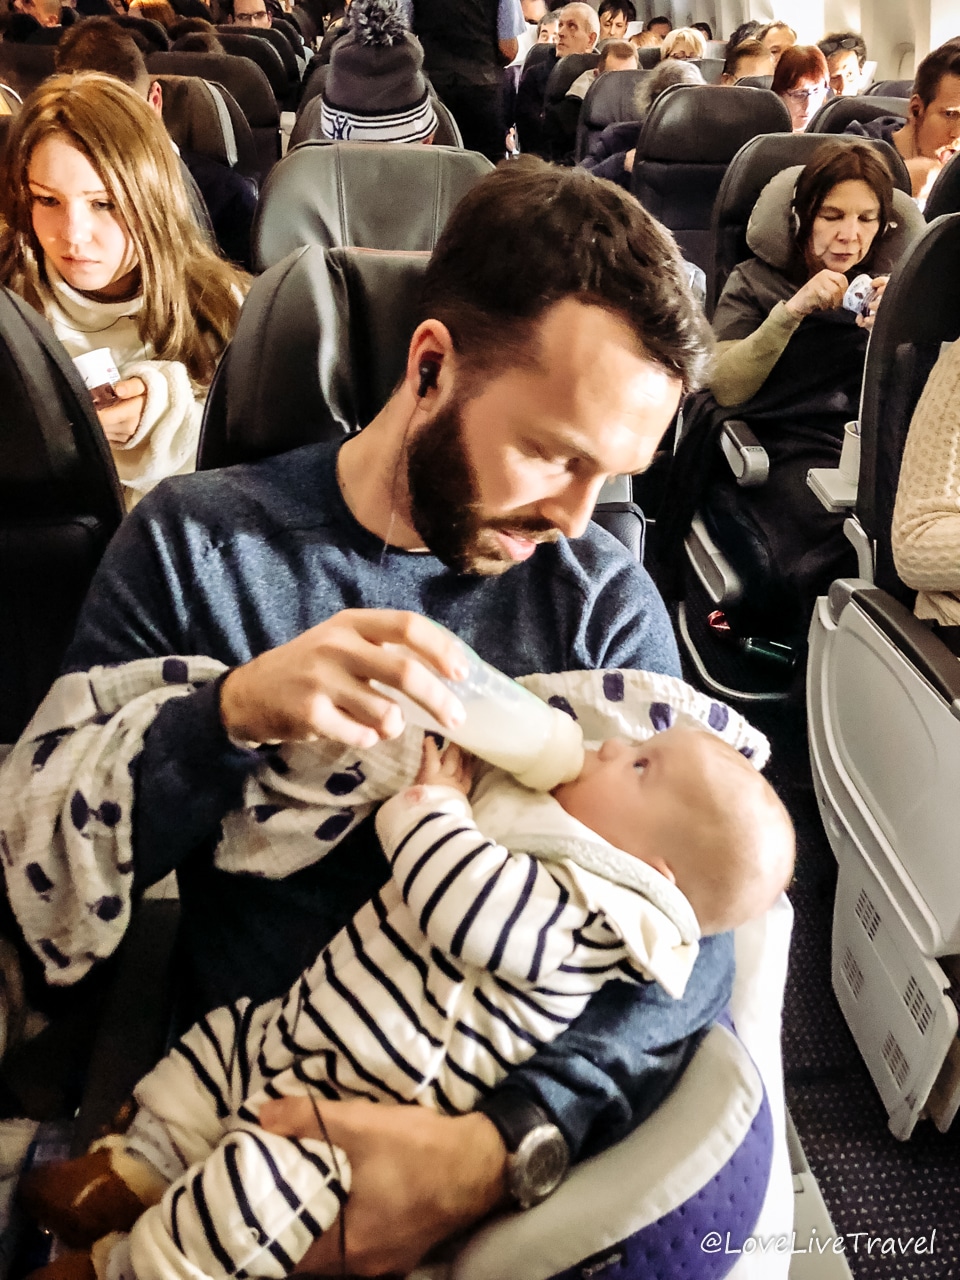 Voyage bébé : tout le nécessaire pour partir en voyage avec bébé